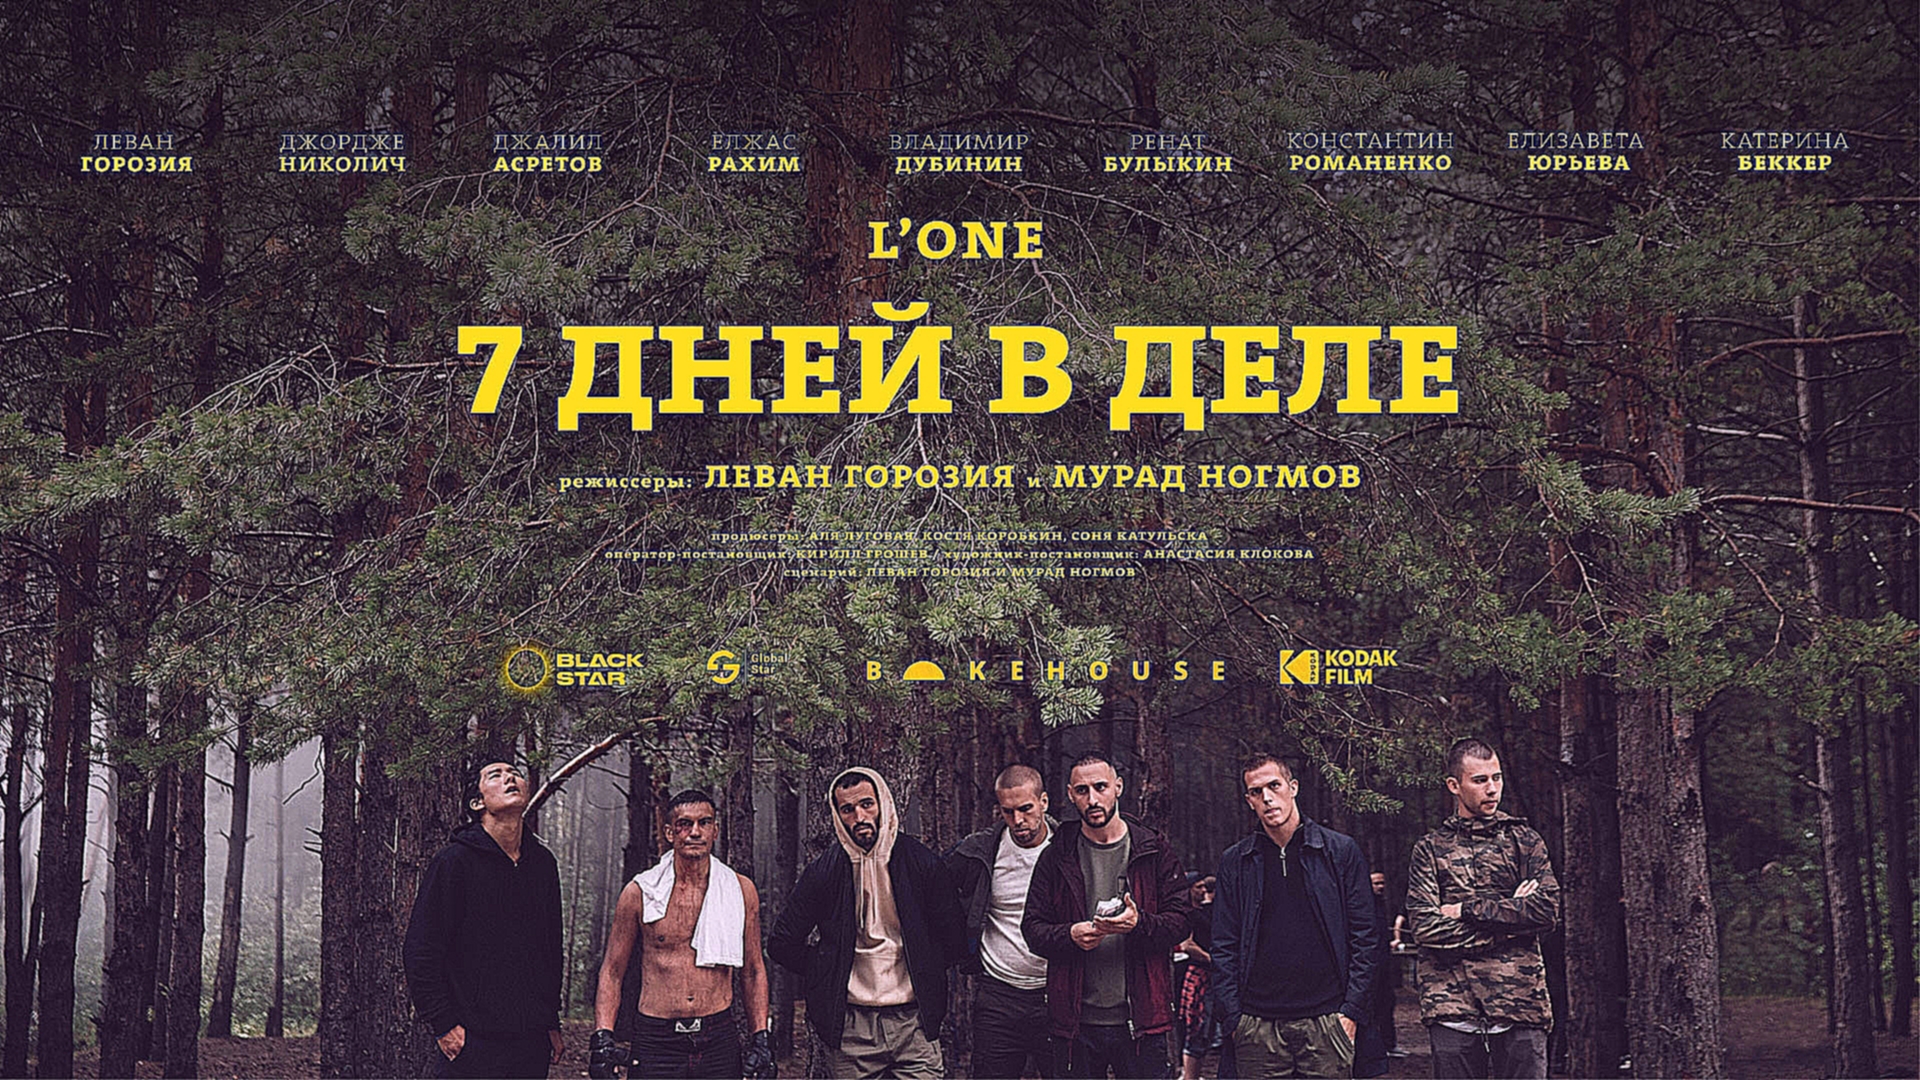 L’One - 7 дней в деле (премьера клипа, 2018) - видеоклип на песню